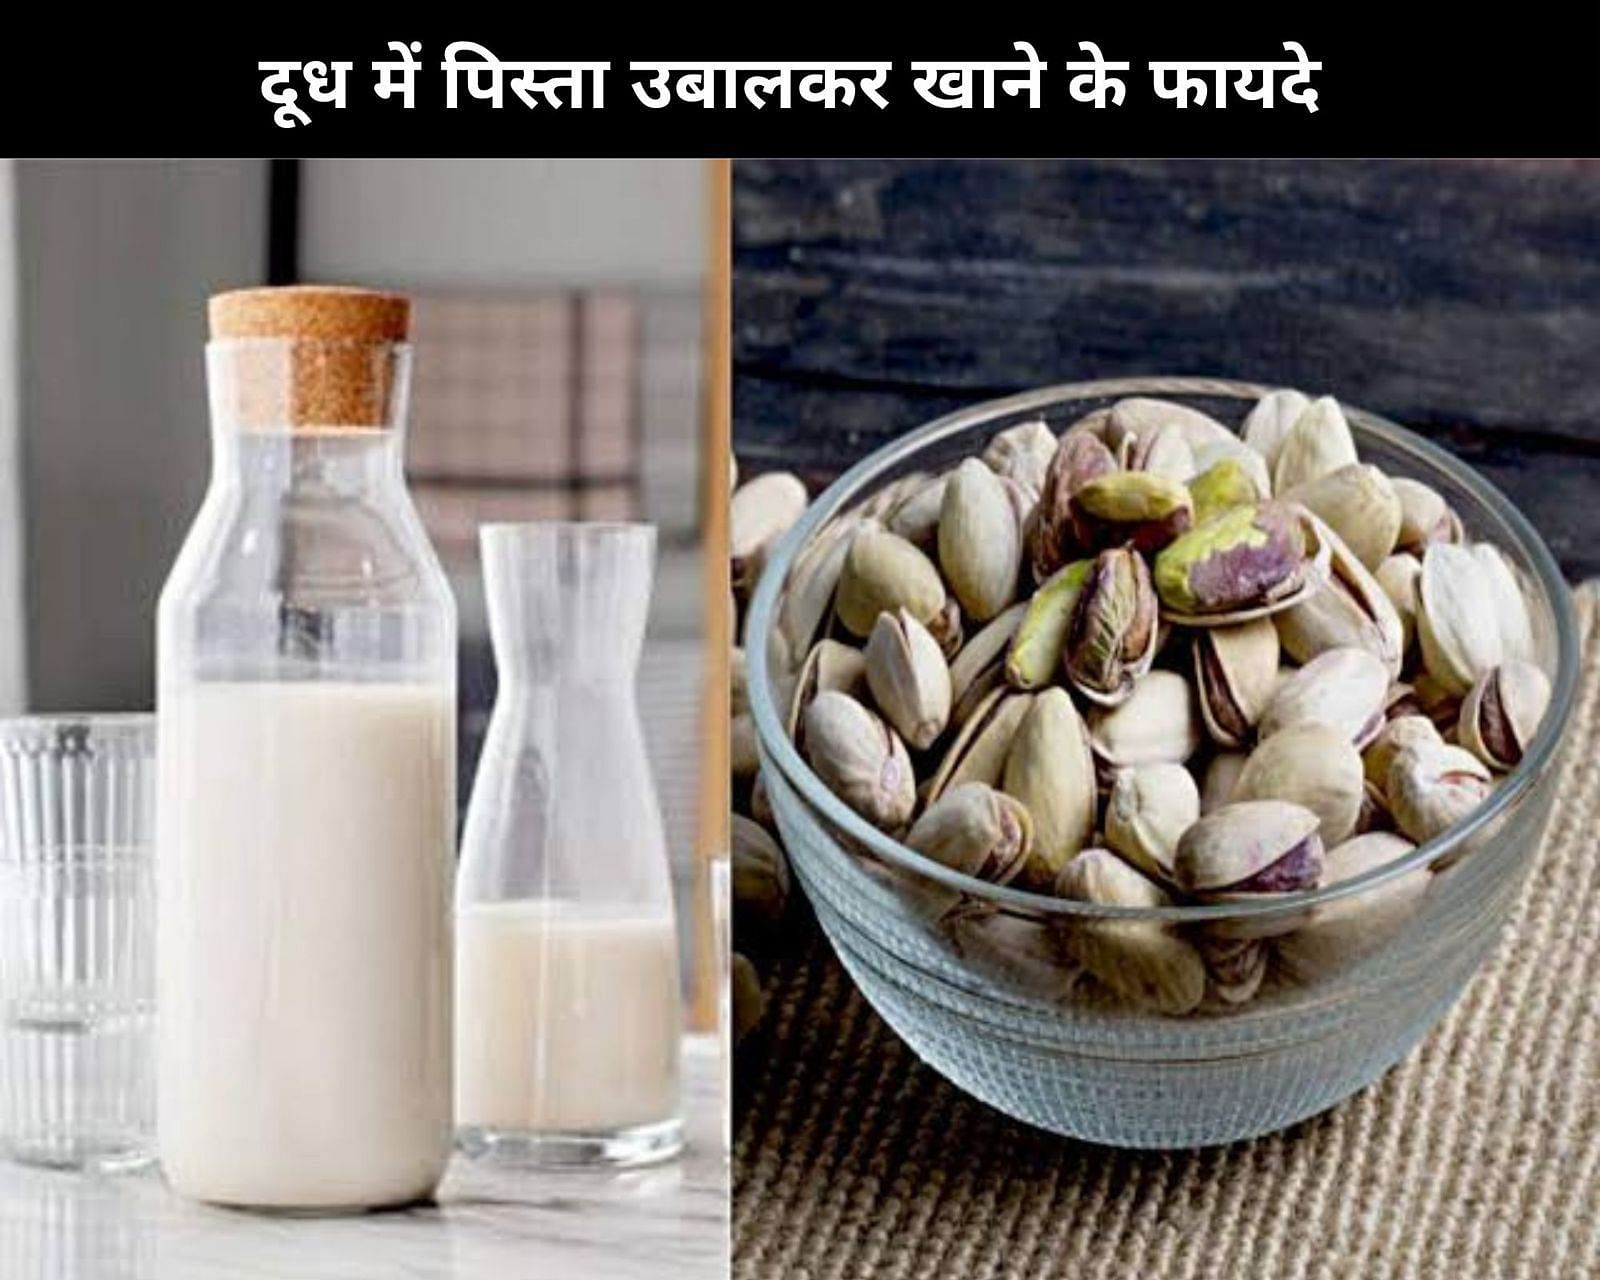 दूध में पिस्ता उबालकर खाने के फायदे  (sportskeeda Hindi) 